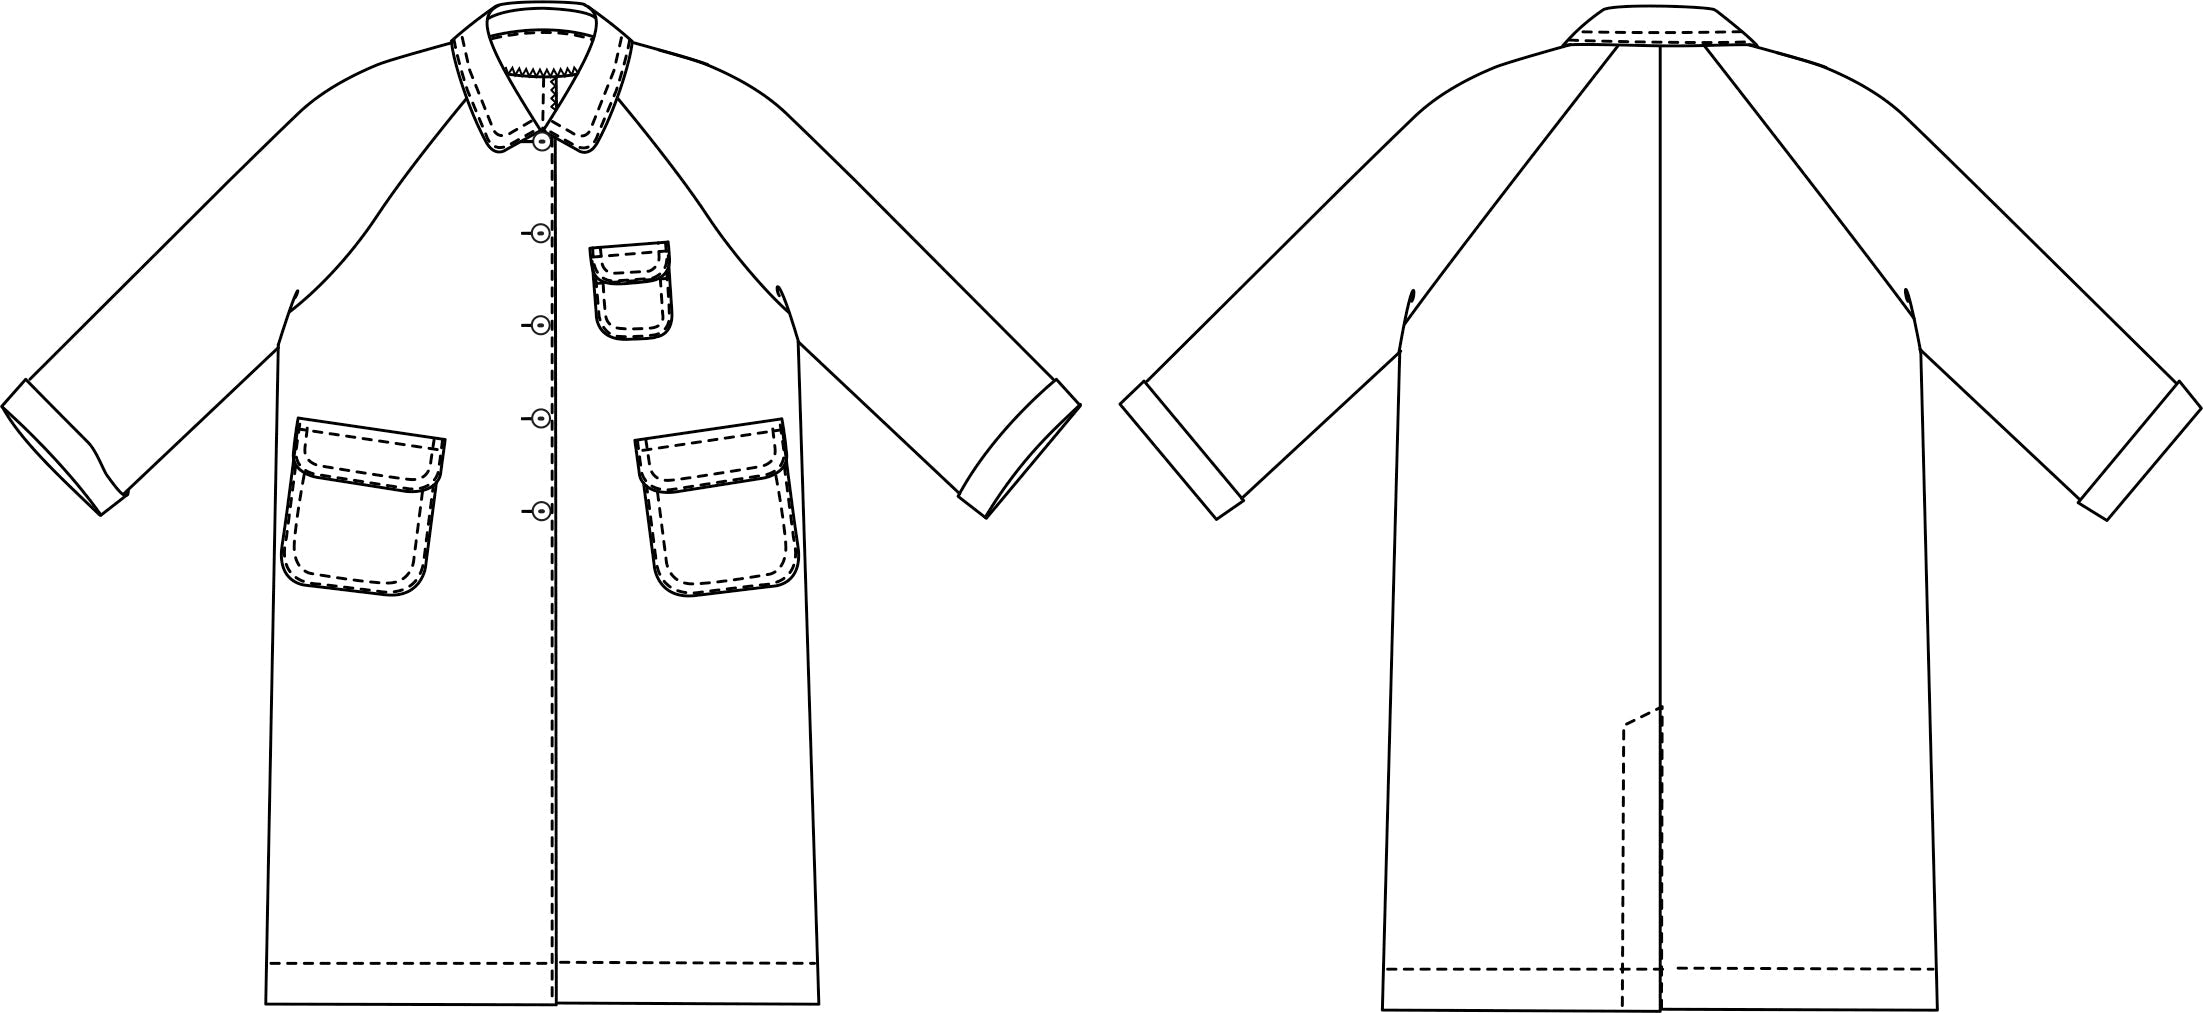 Merchant + Mills -  September Jacket | Core Fabrics